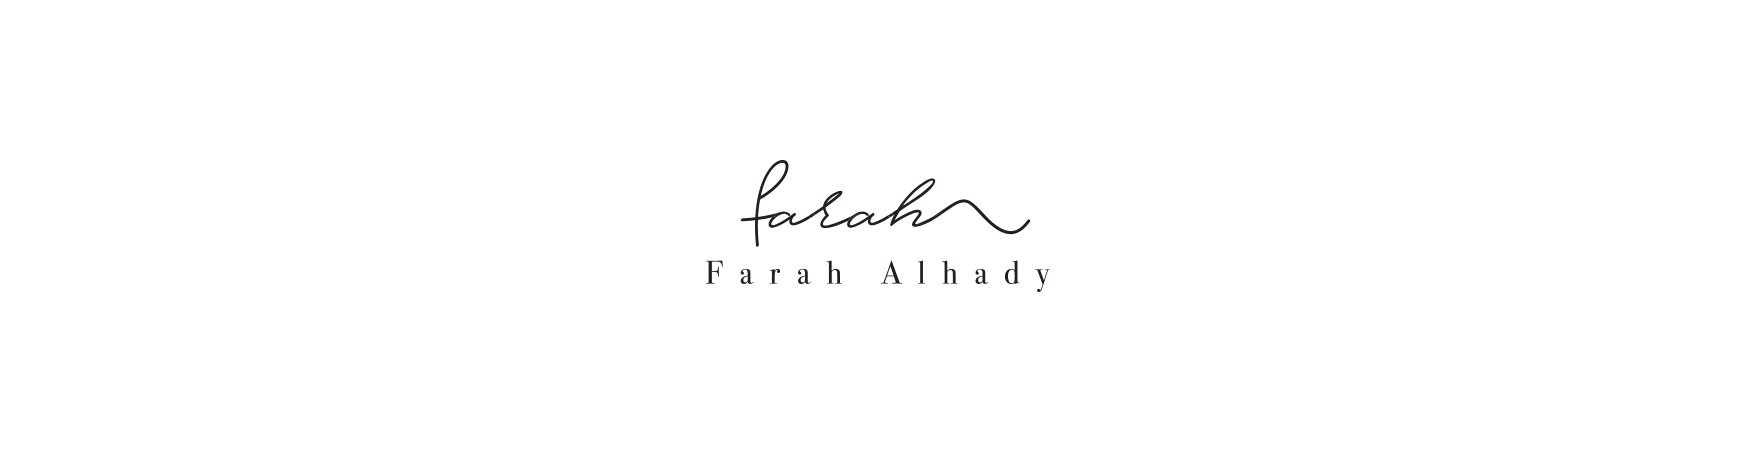 Farah Alhady